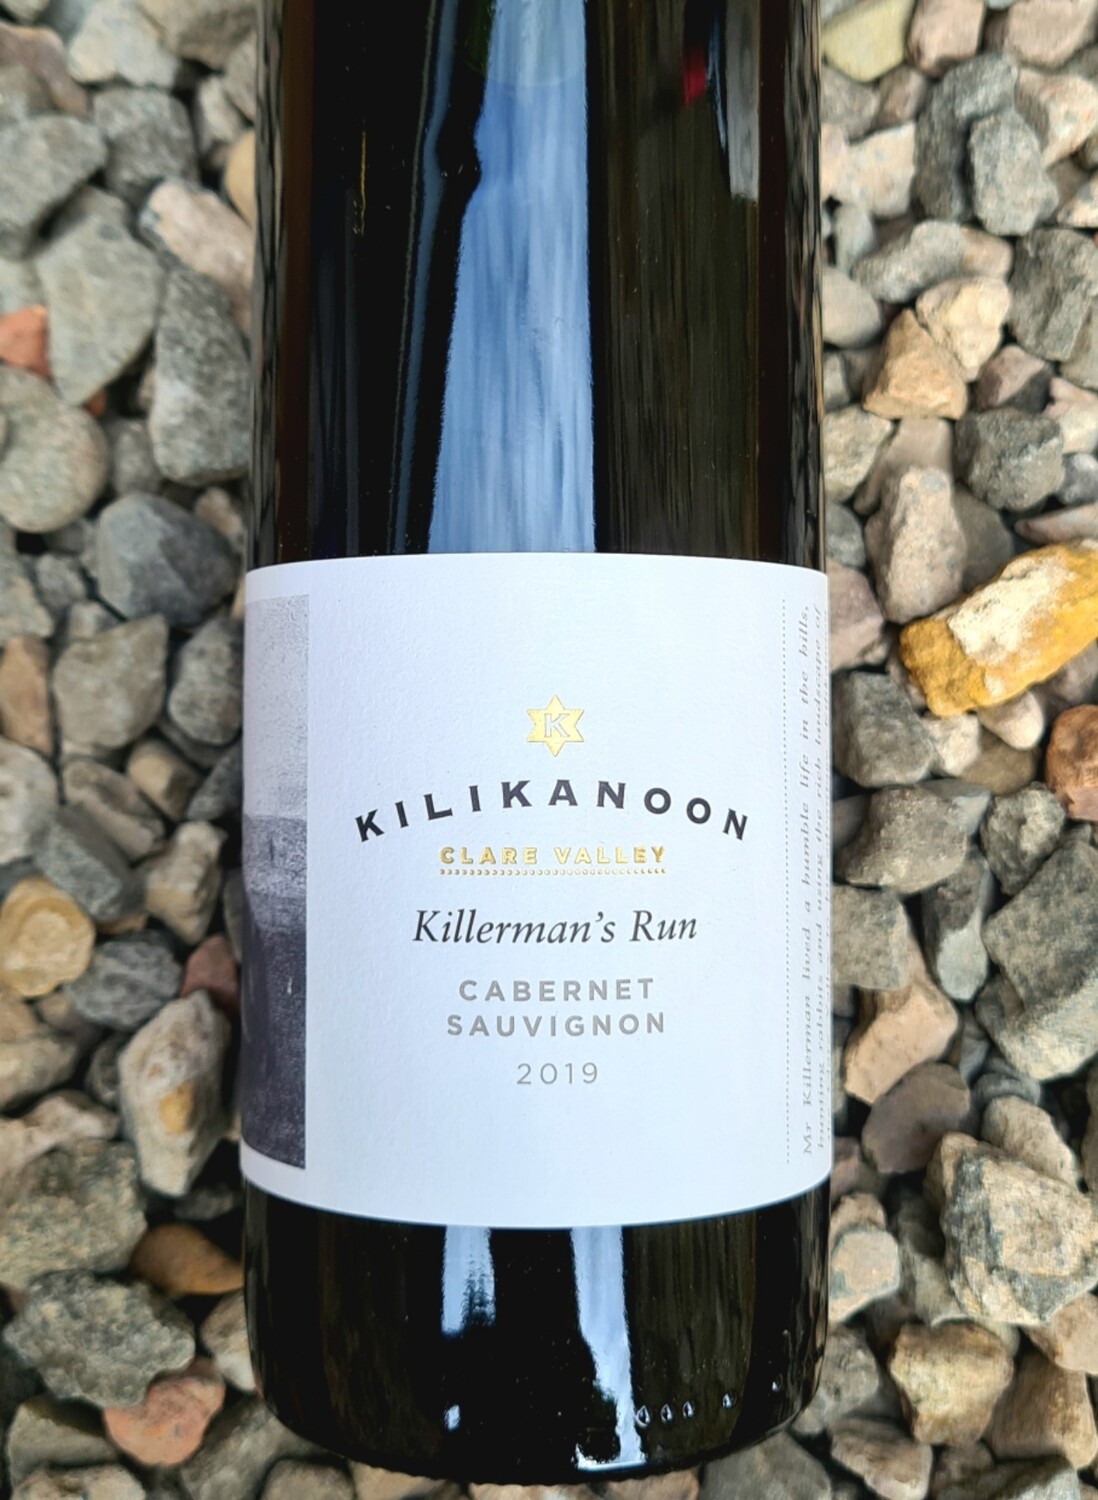 Kilikanoon 'Killerman's Run' Cabernet Sauvignon 2019